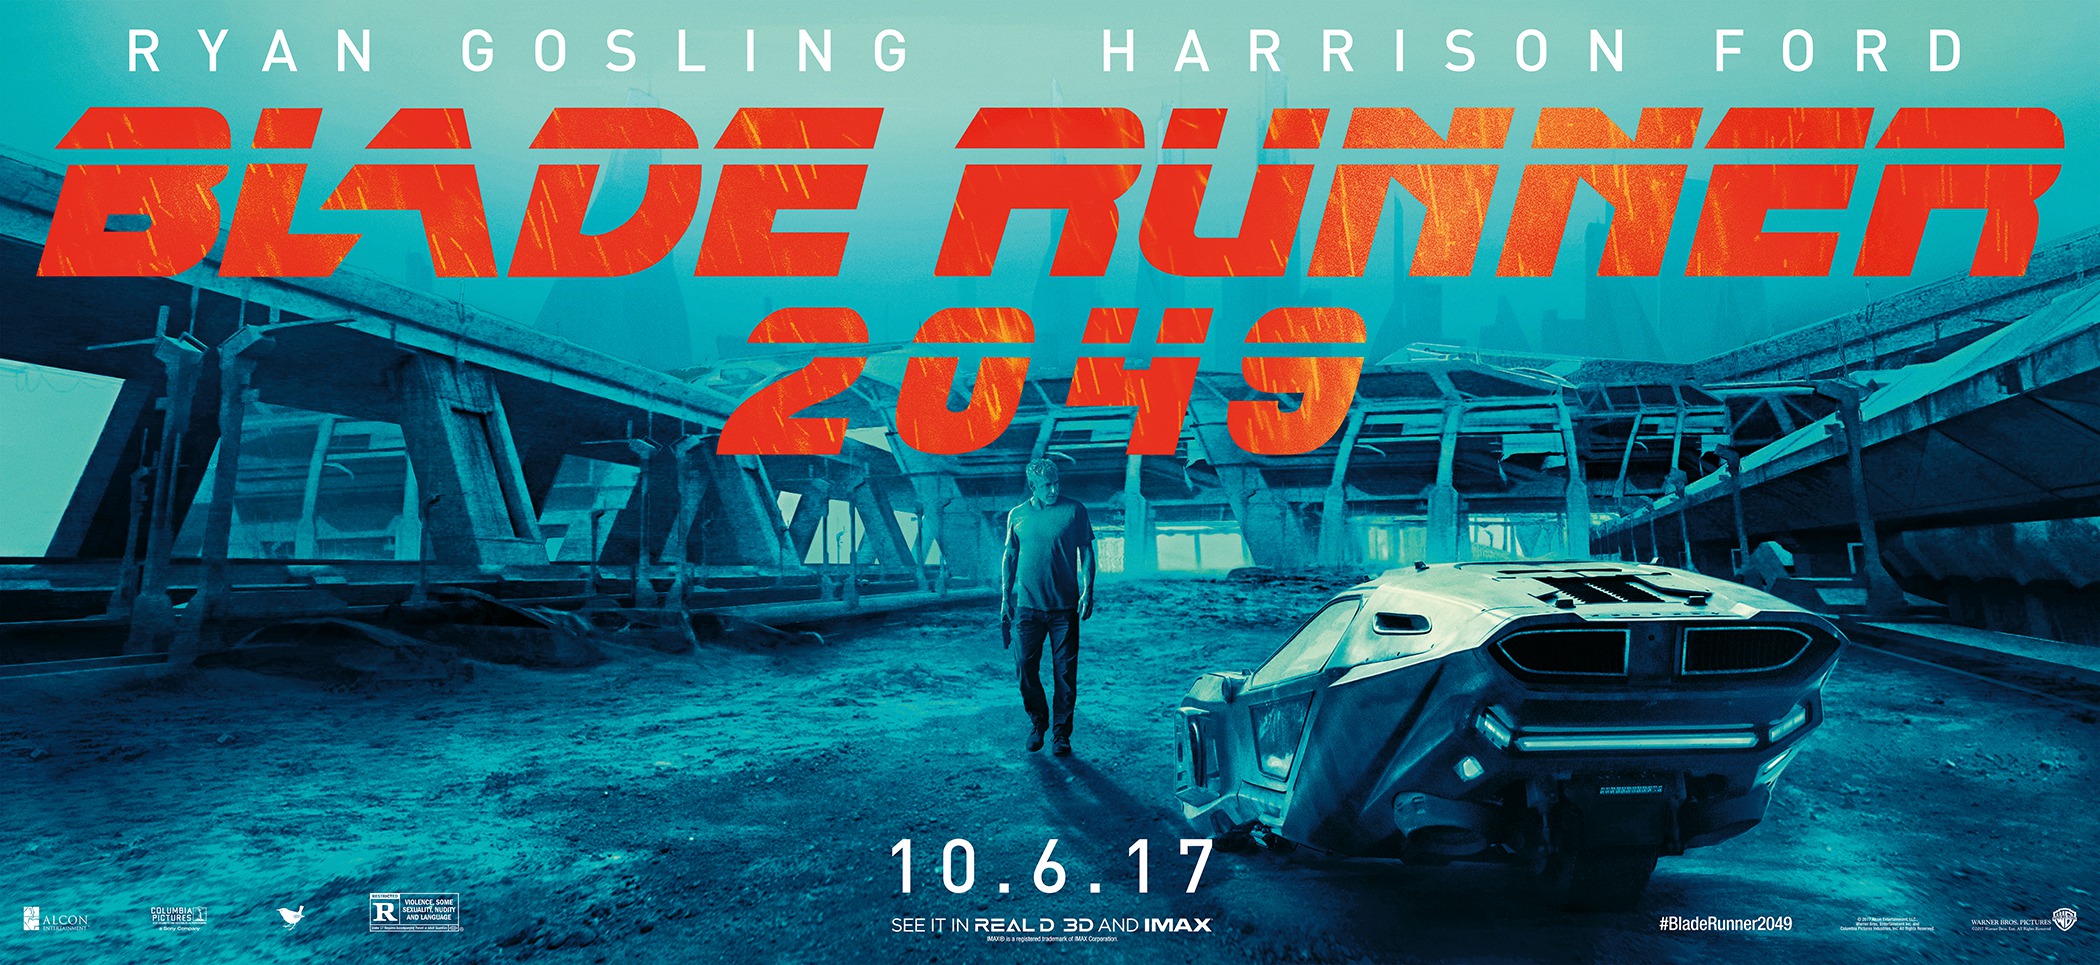 Mega Sized Movie Poster Image for Blade Runner 2049 (#20 of 32)